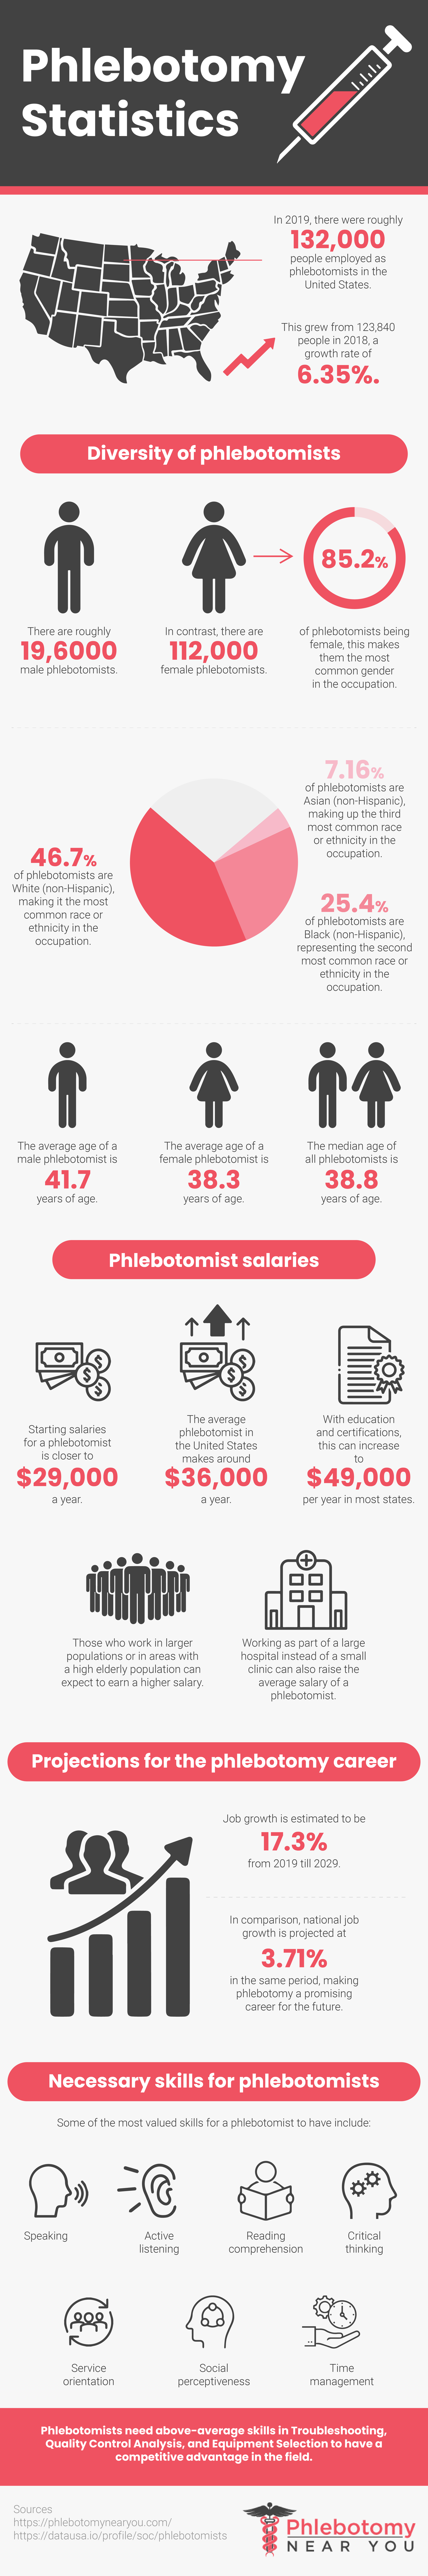 Phlebotomy Statistics